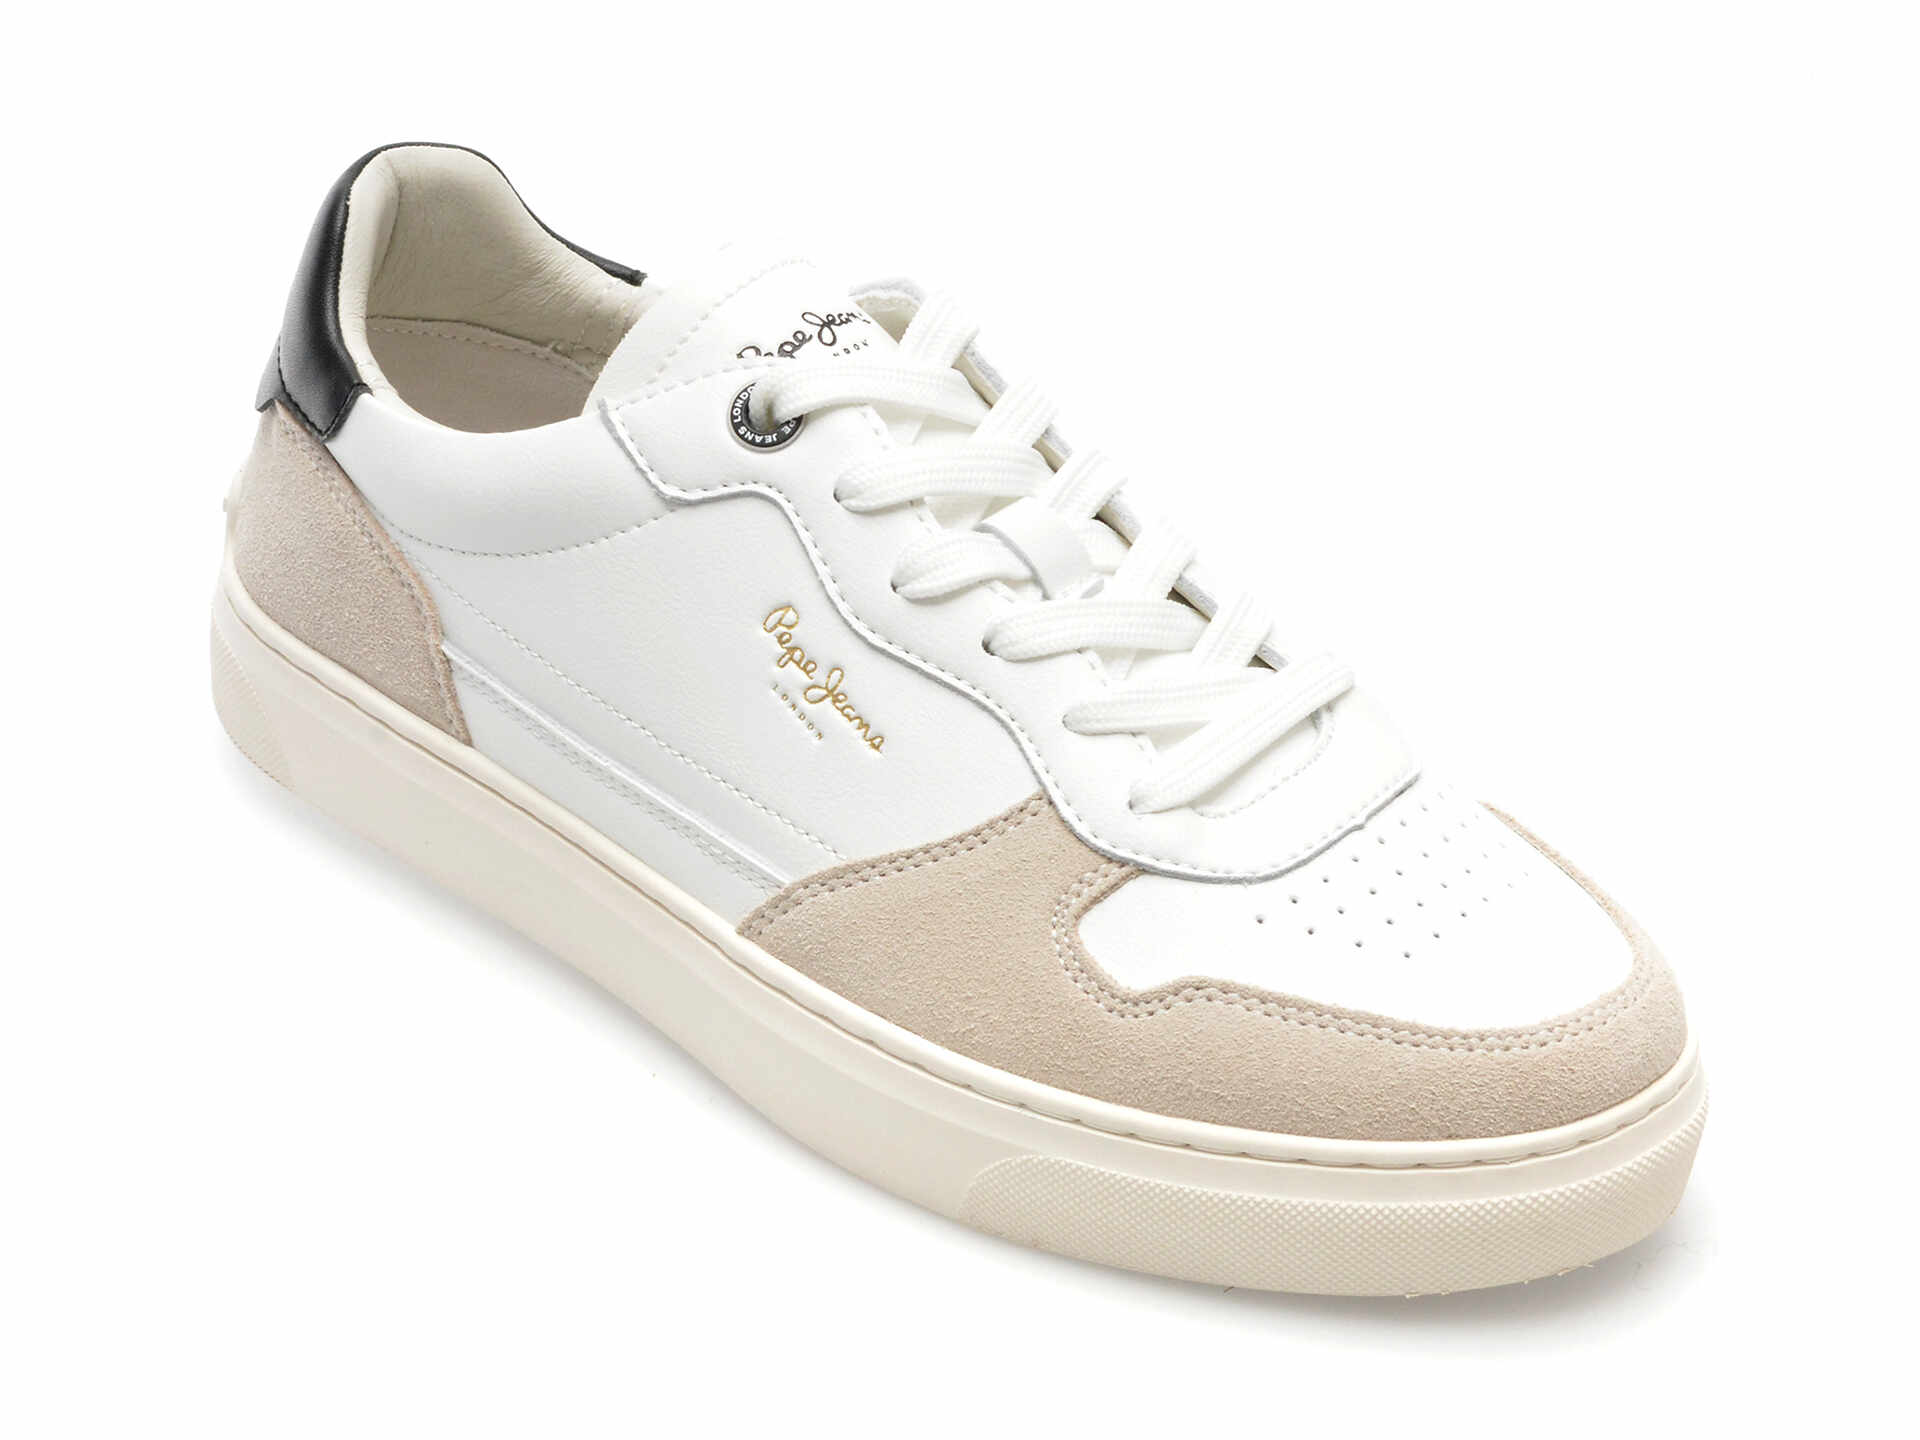 Pantofi PEPE JEANS albi, CAMDEN STREET, din piele ecologica